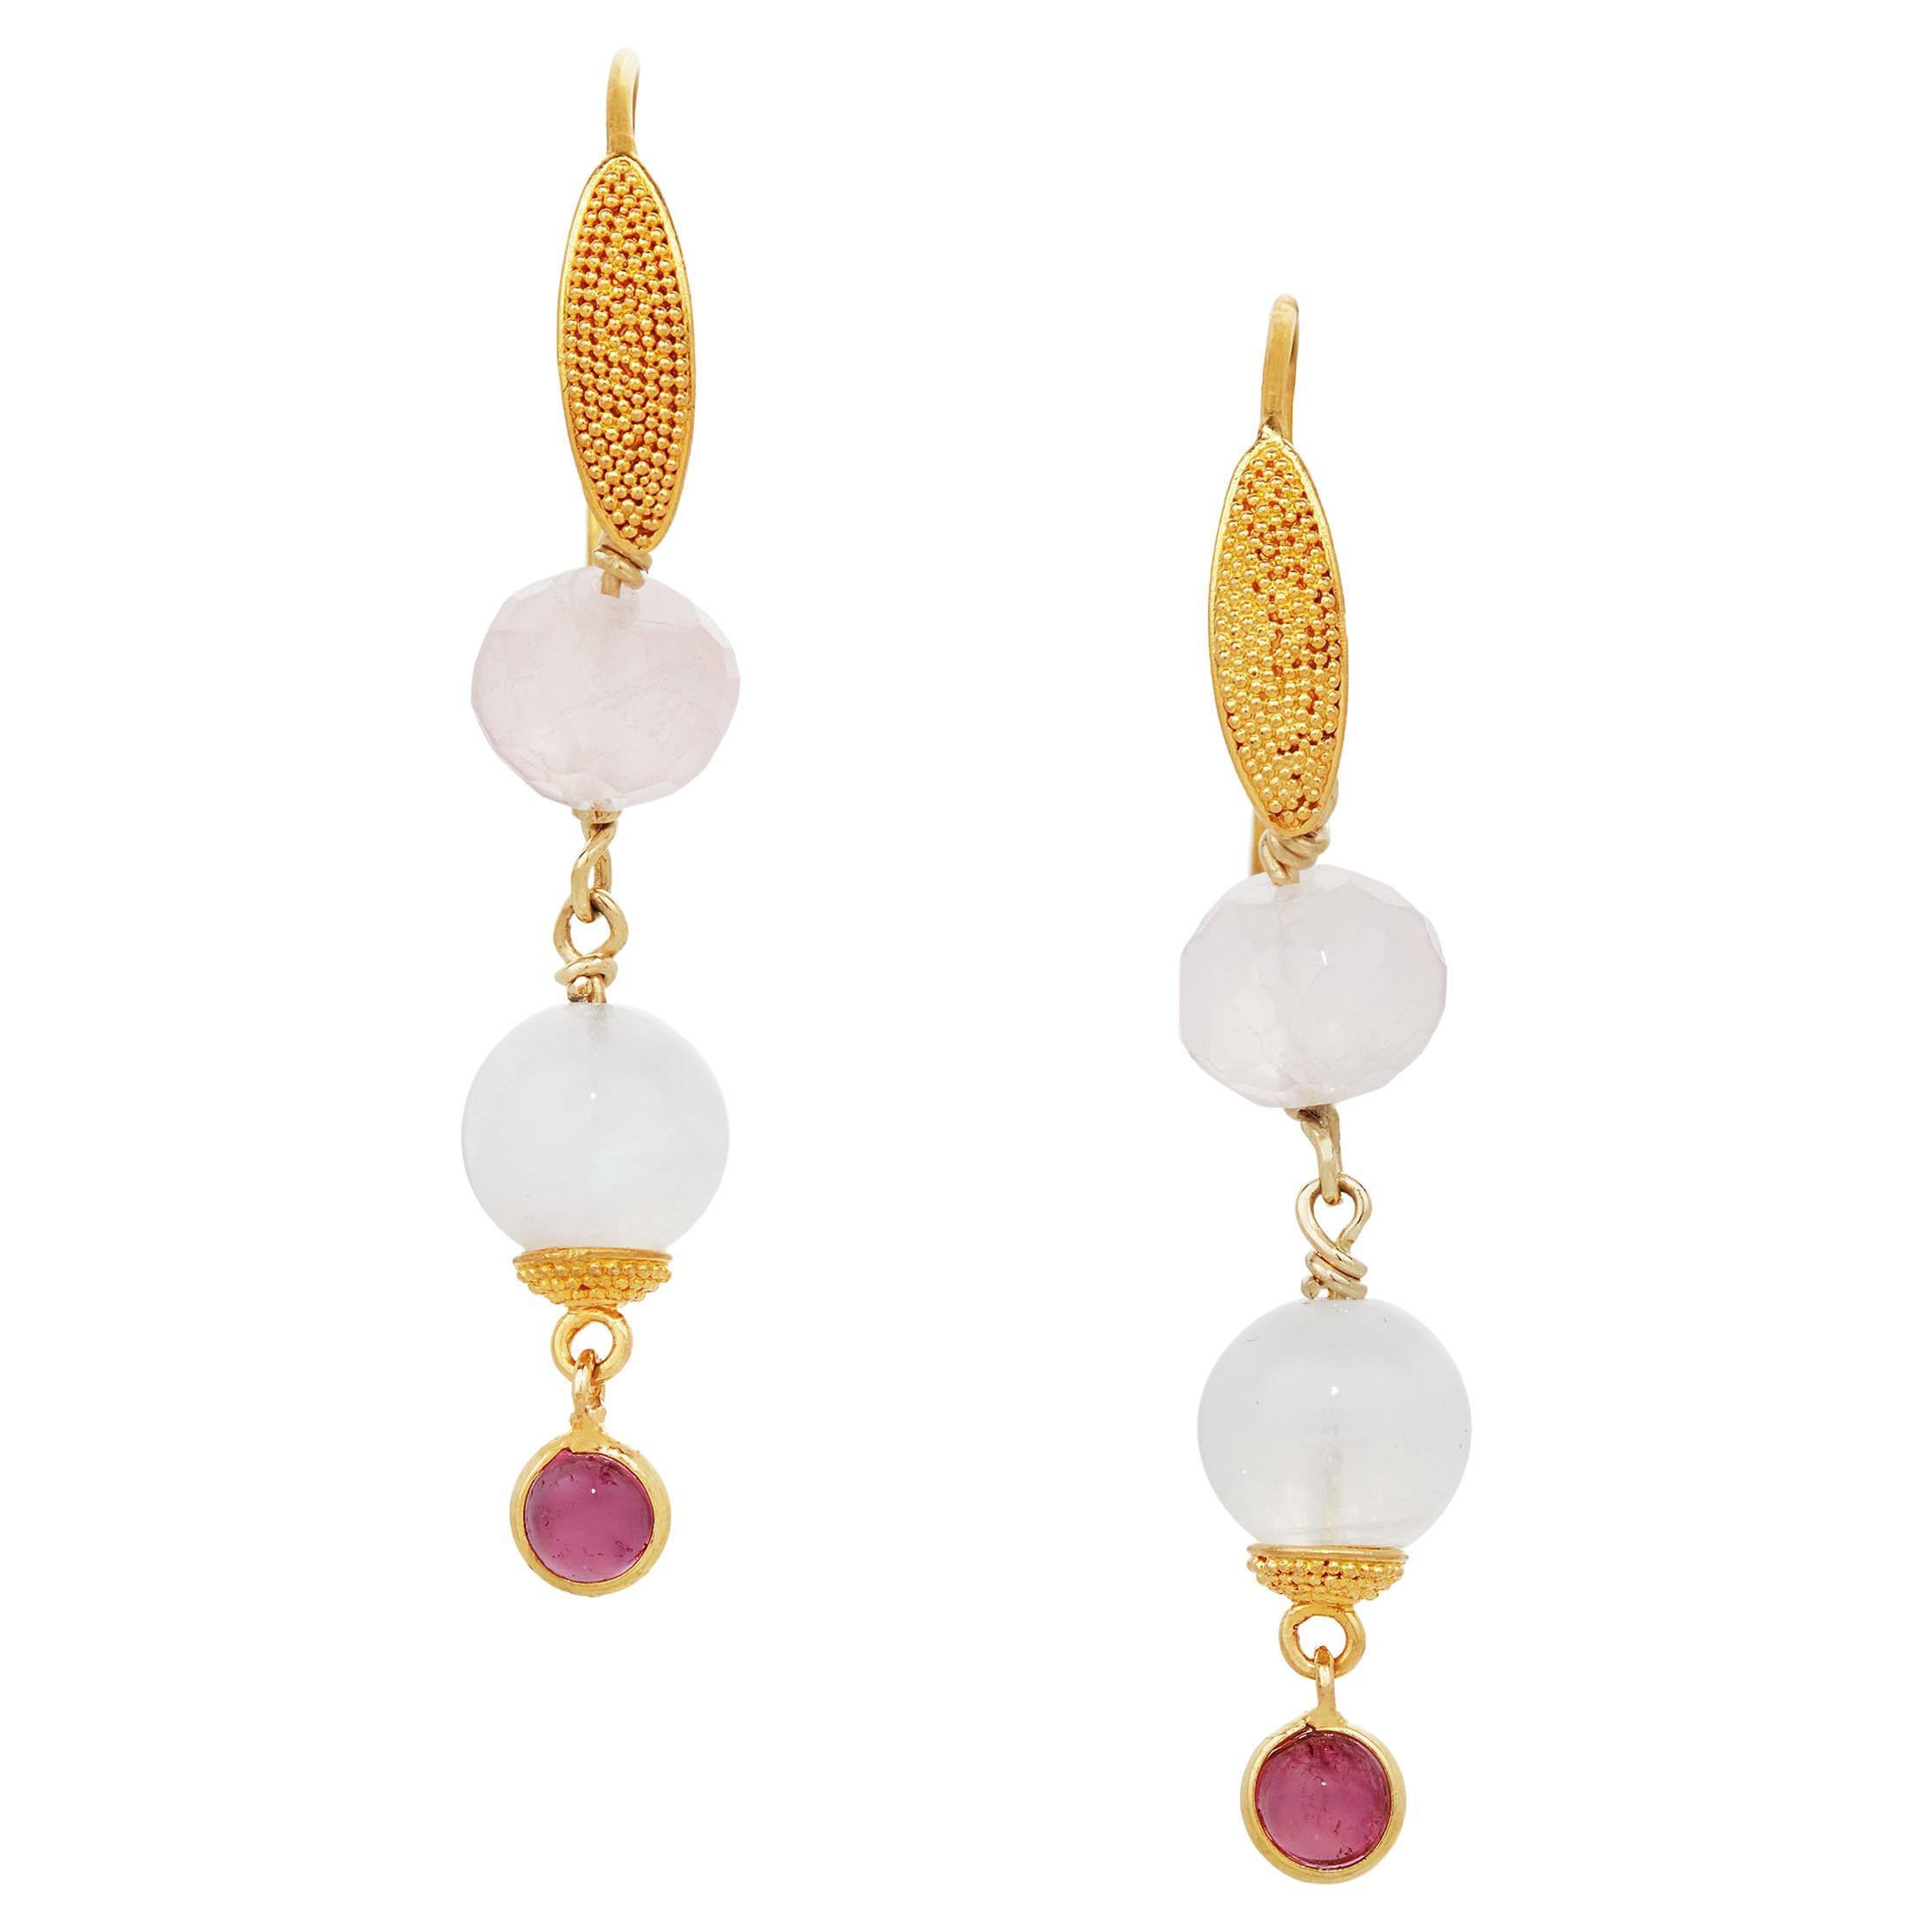 Boucles d'oreilles en or jaune 18 carats avec quartz rose, pierre de lune et tourmaline rose